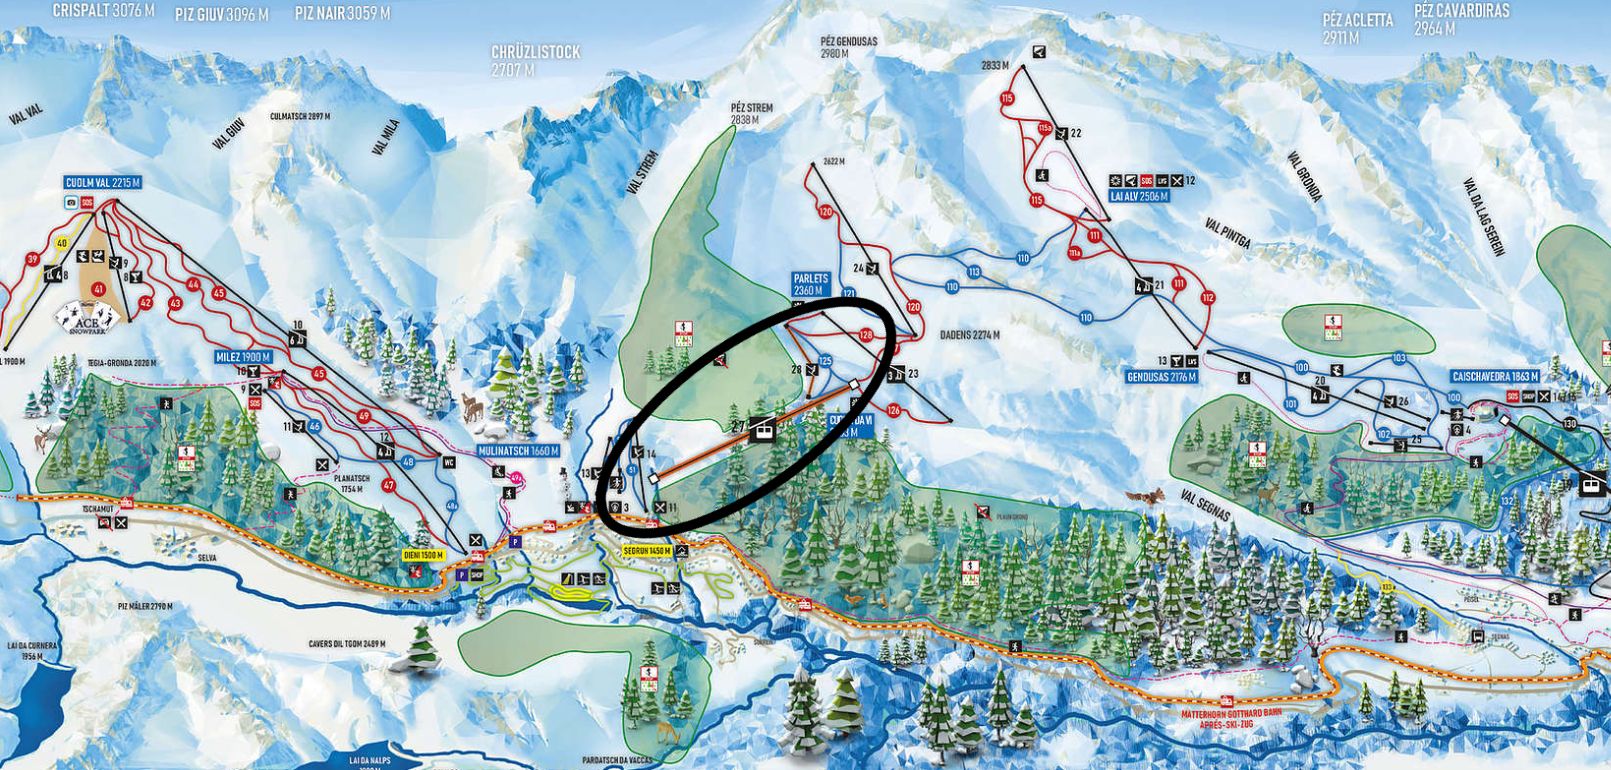 De nieuwe Cuolm da Vi pendelbaan maakt de verbinding tussen Sedrun (links) en het skigebied van Disentis (rechts) compleet